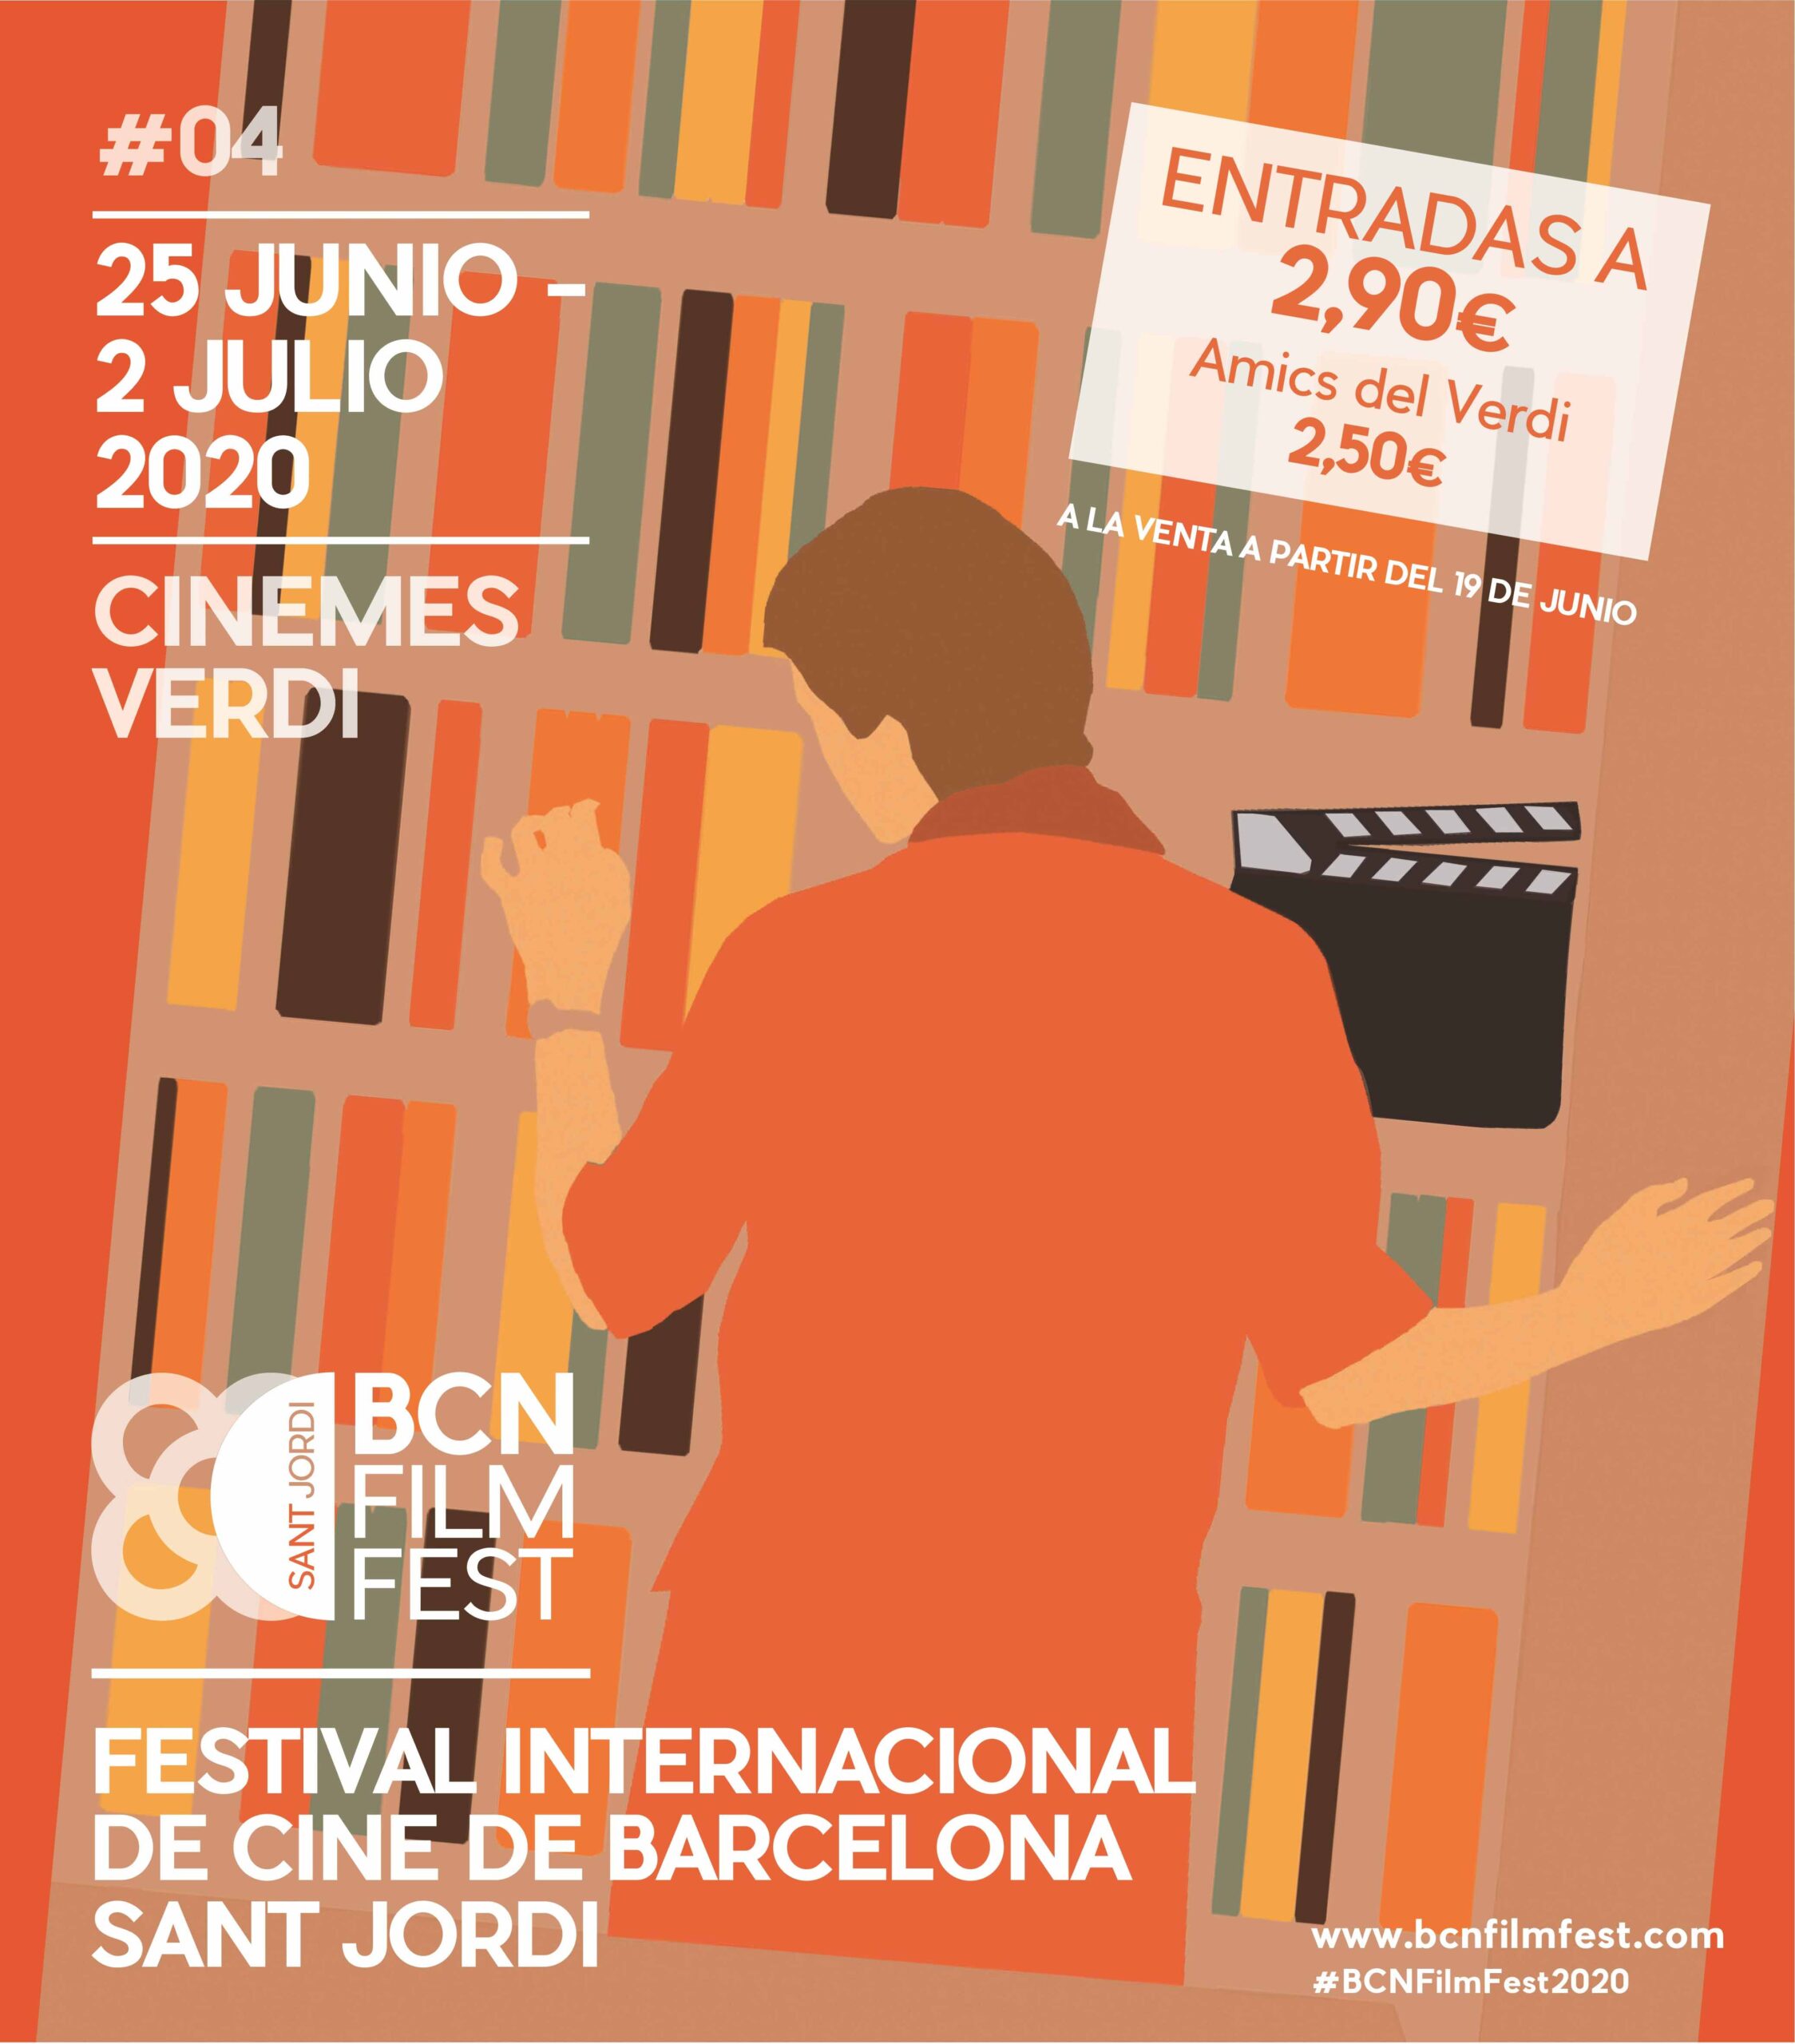 El BCN Film Fest se celebrará del 25 de junio y el 2 de julio